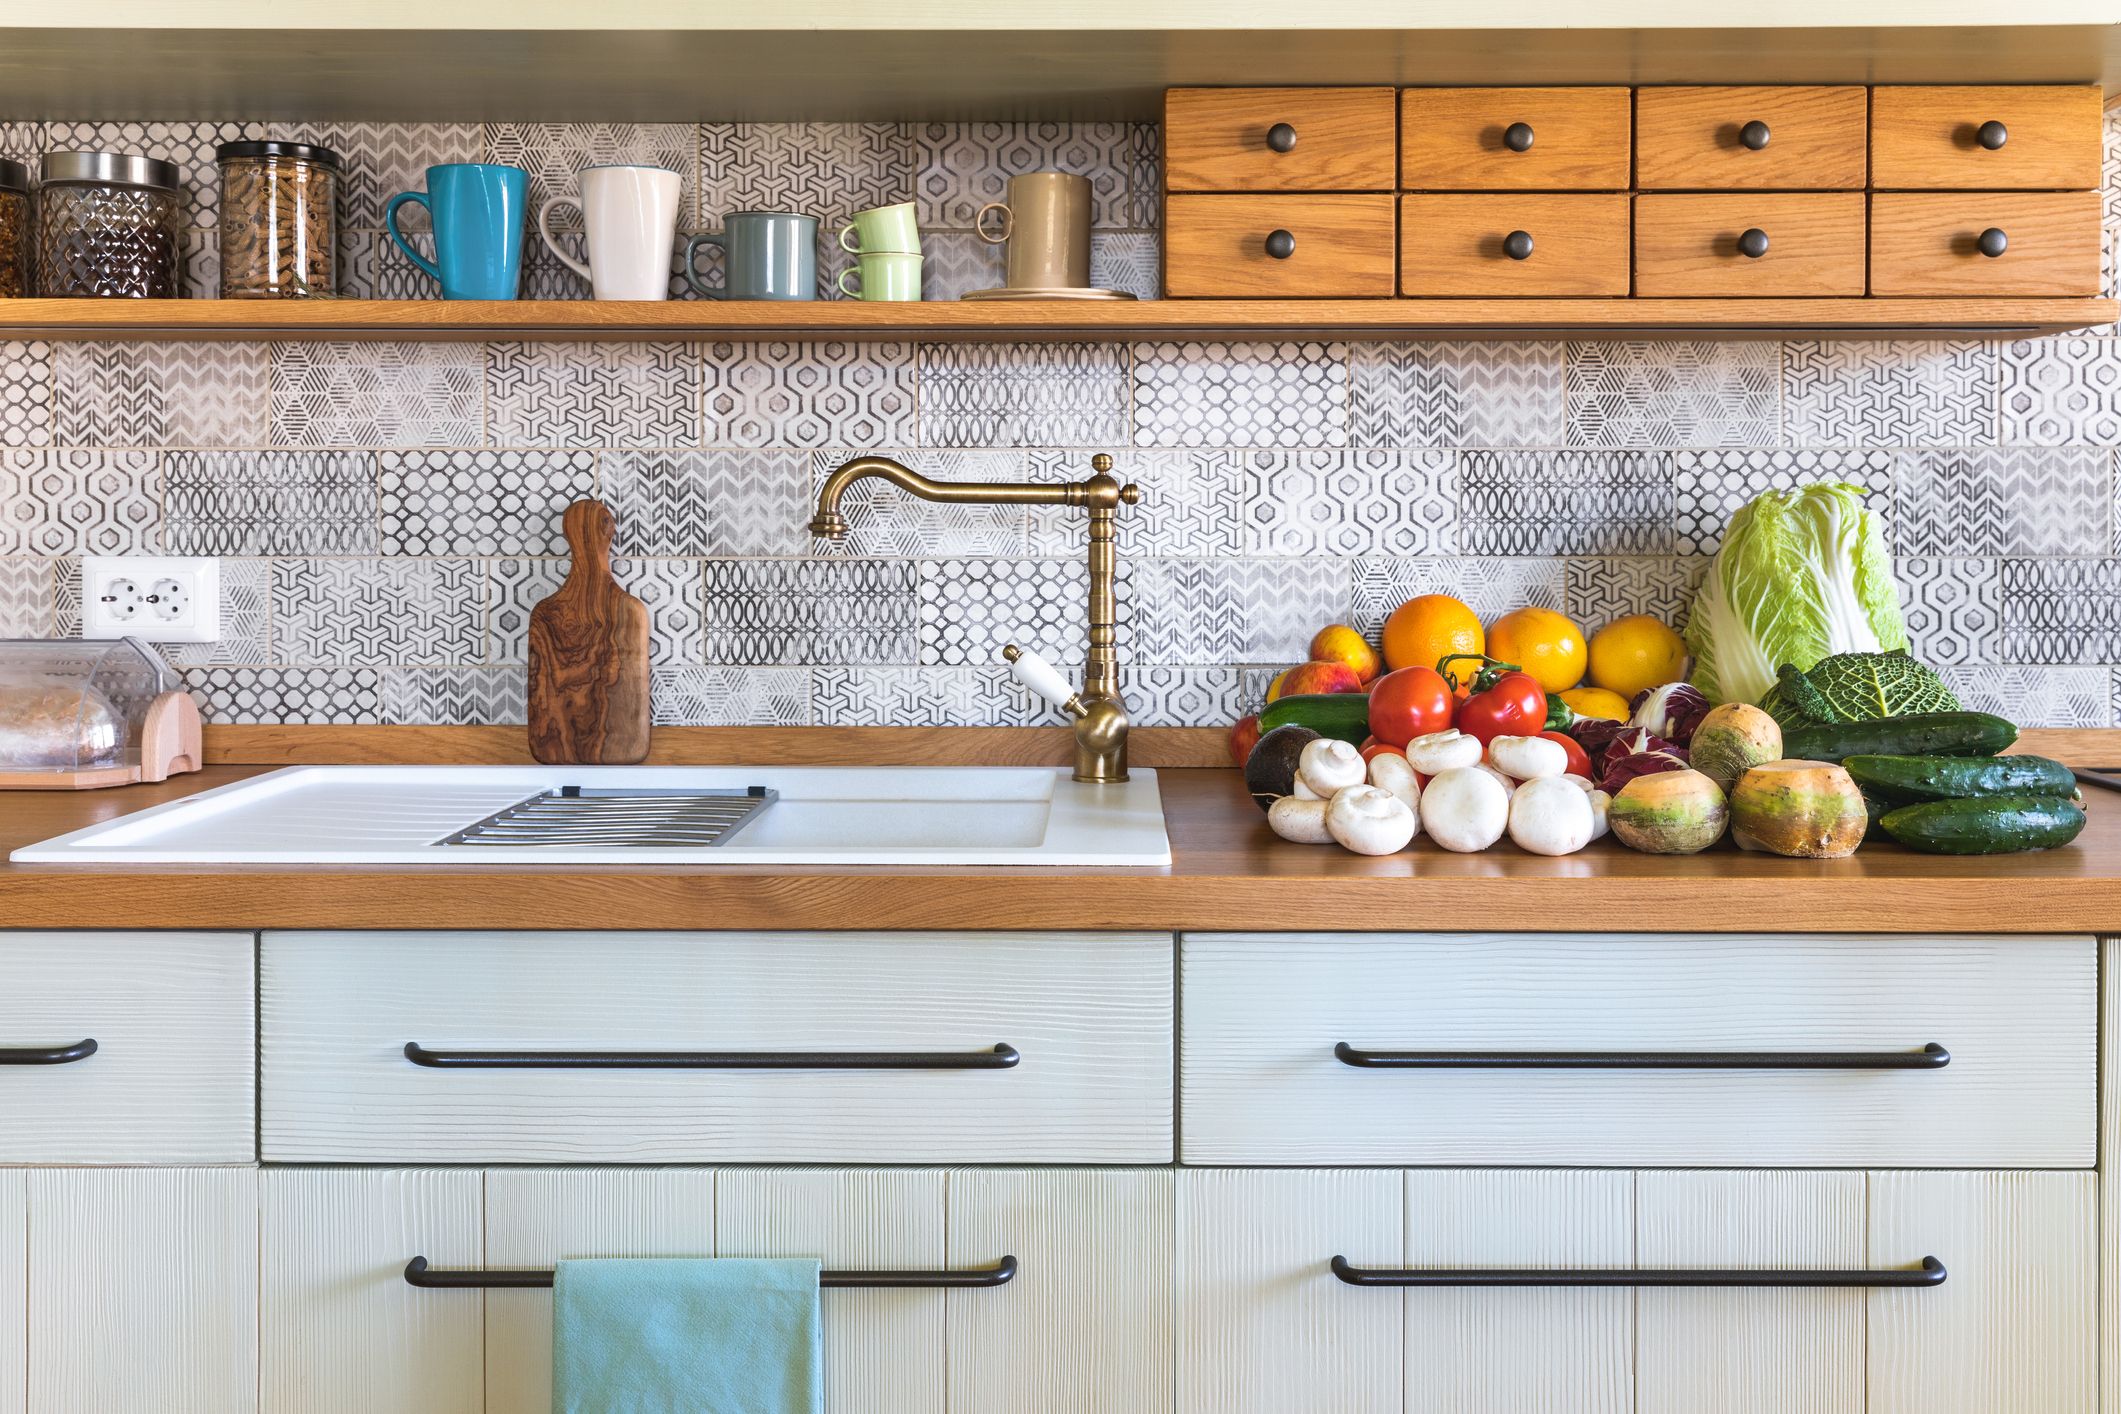 20 DIY Kitchen Décor Ideas   Best Ways to Decorate Your Kitchen